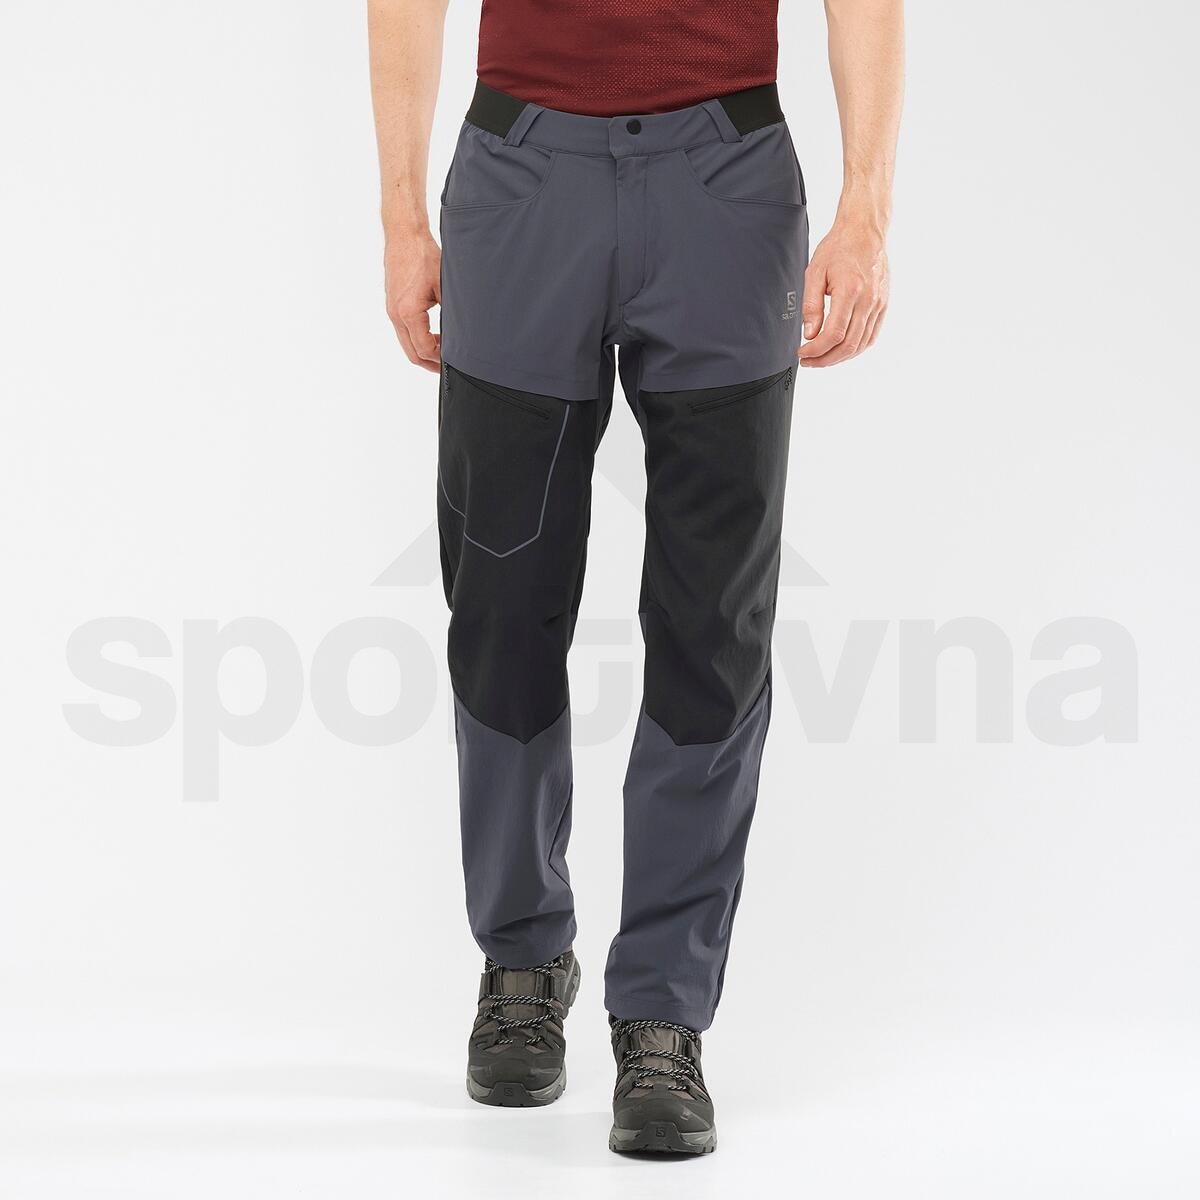 Kalhoty Salomon WAYFARER SECURE M - šedá/černá (prodloužená délka)